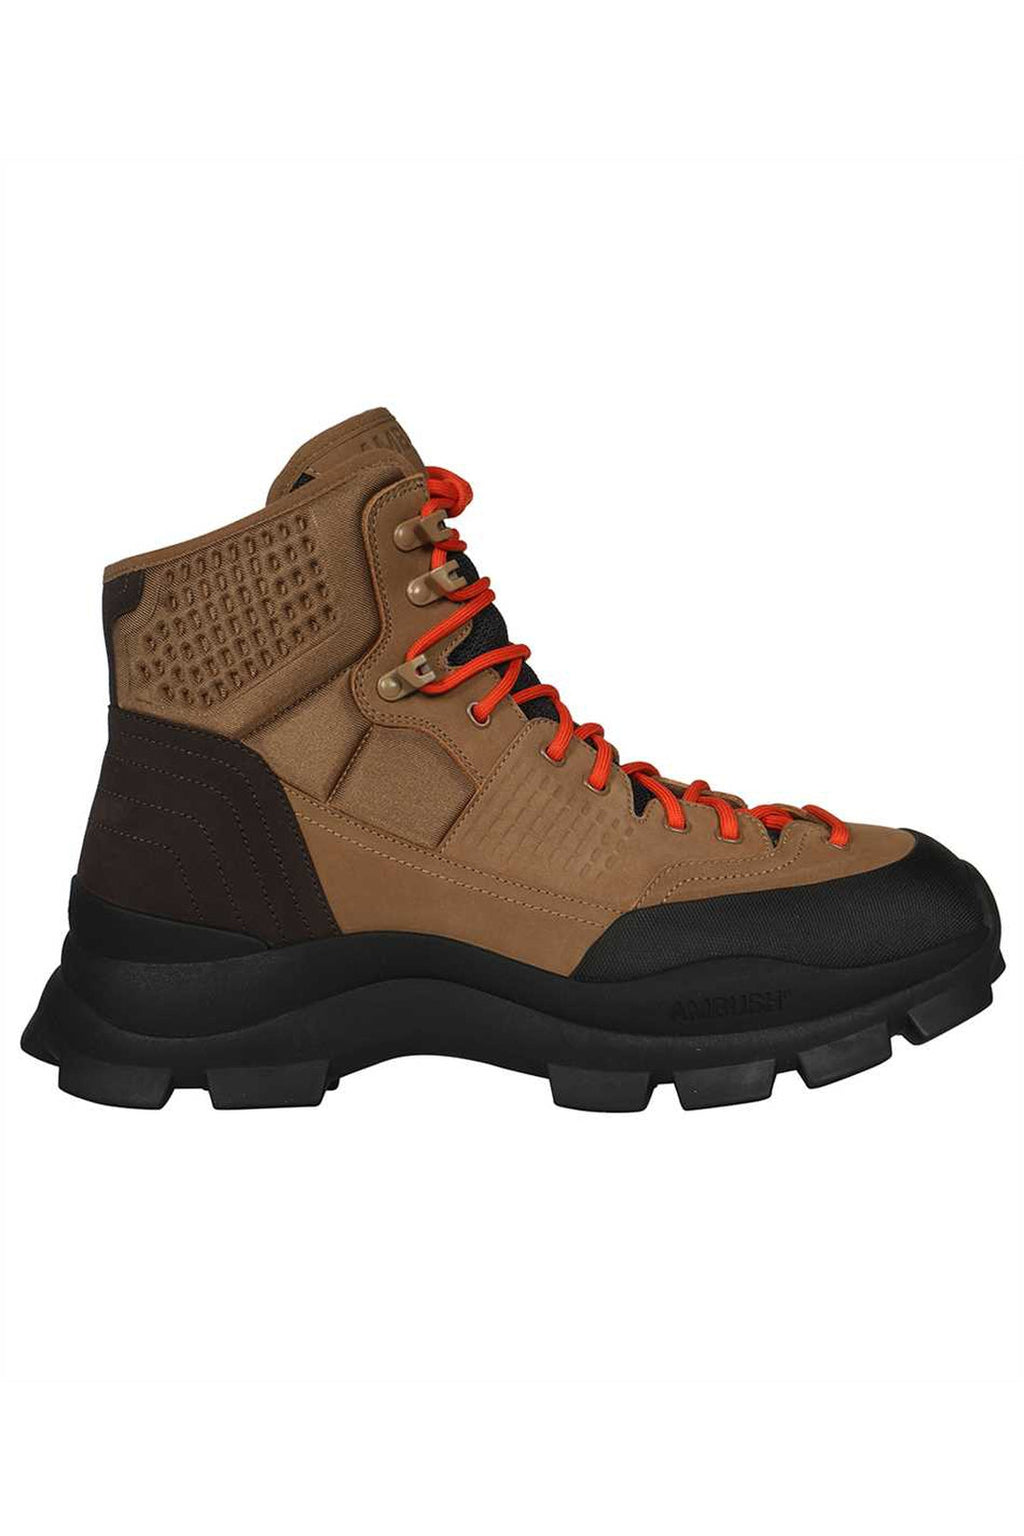 AMBUSH-OUTLET-SALE-Hiking boots-ARCHIVIST